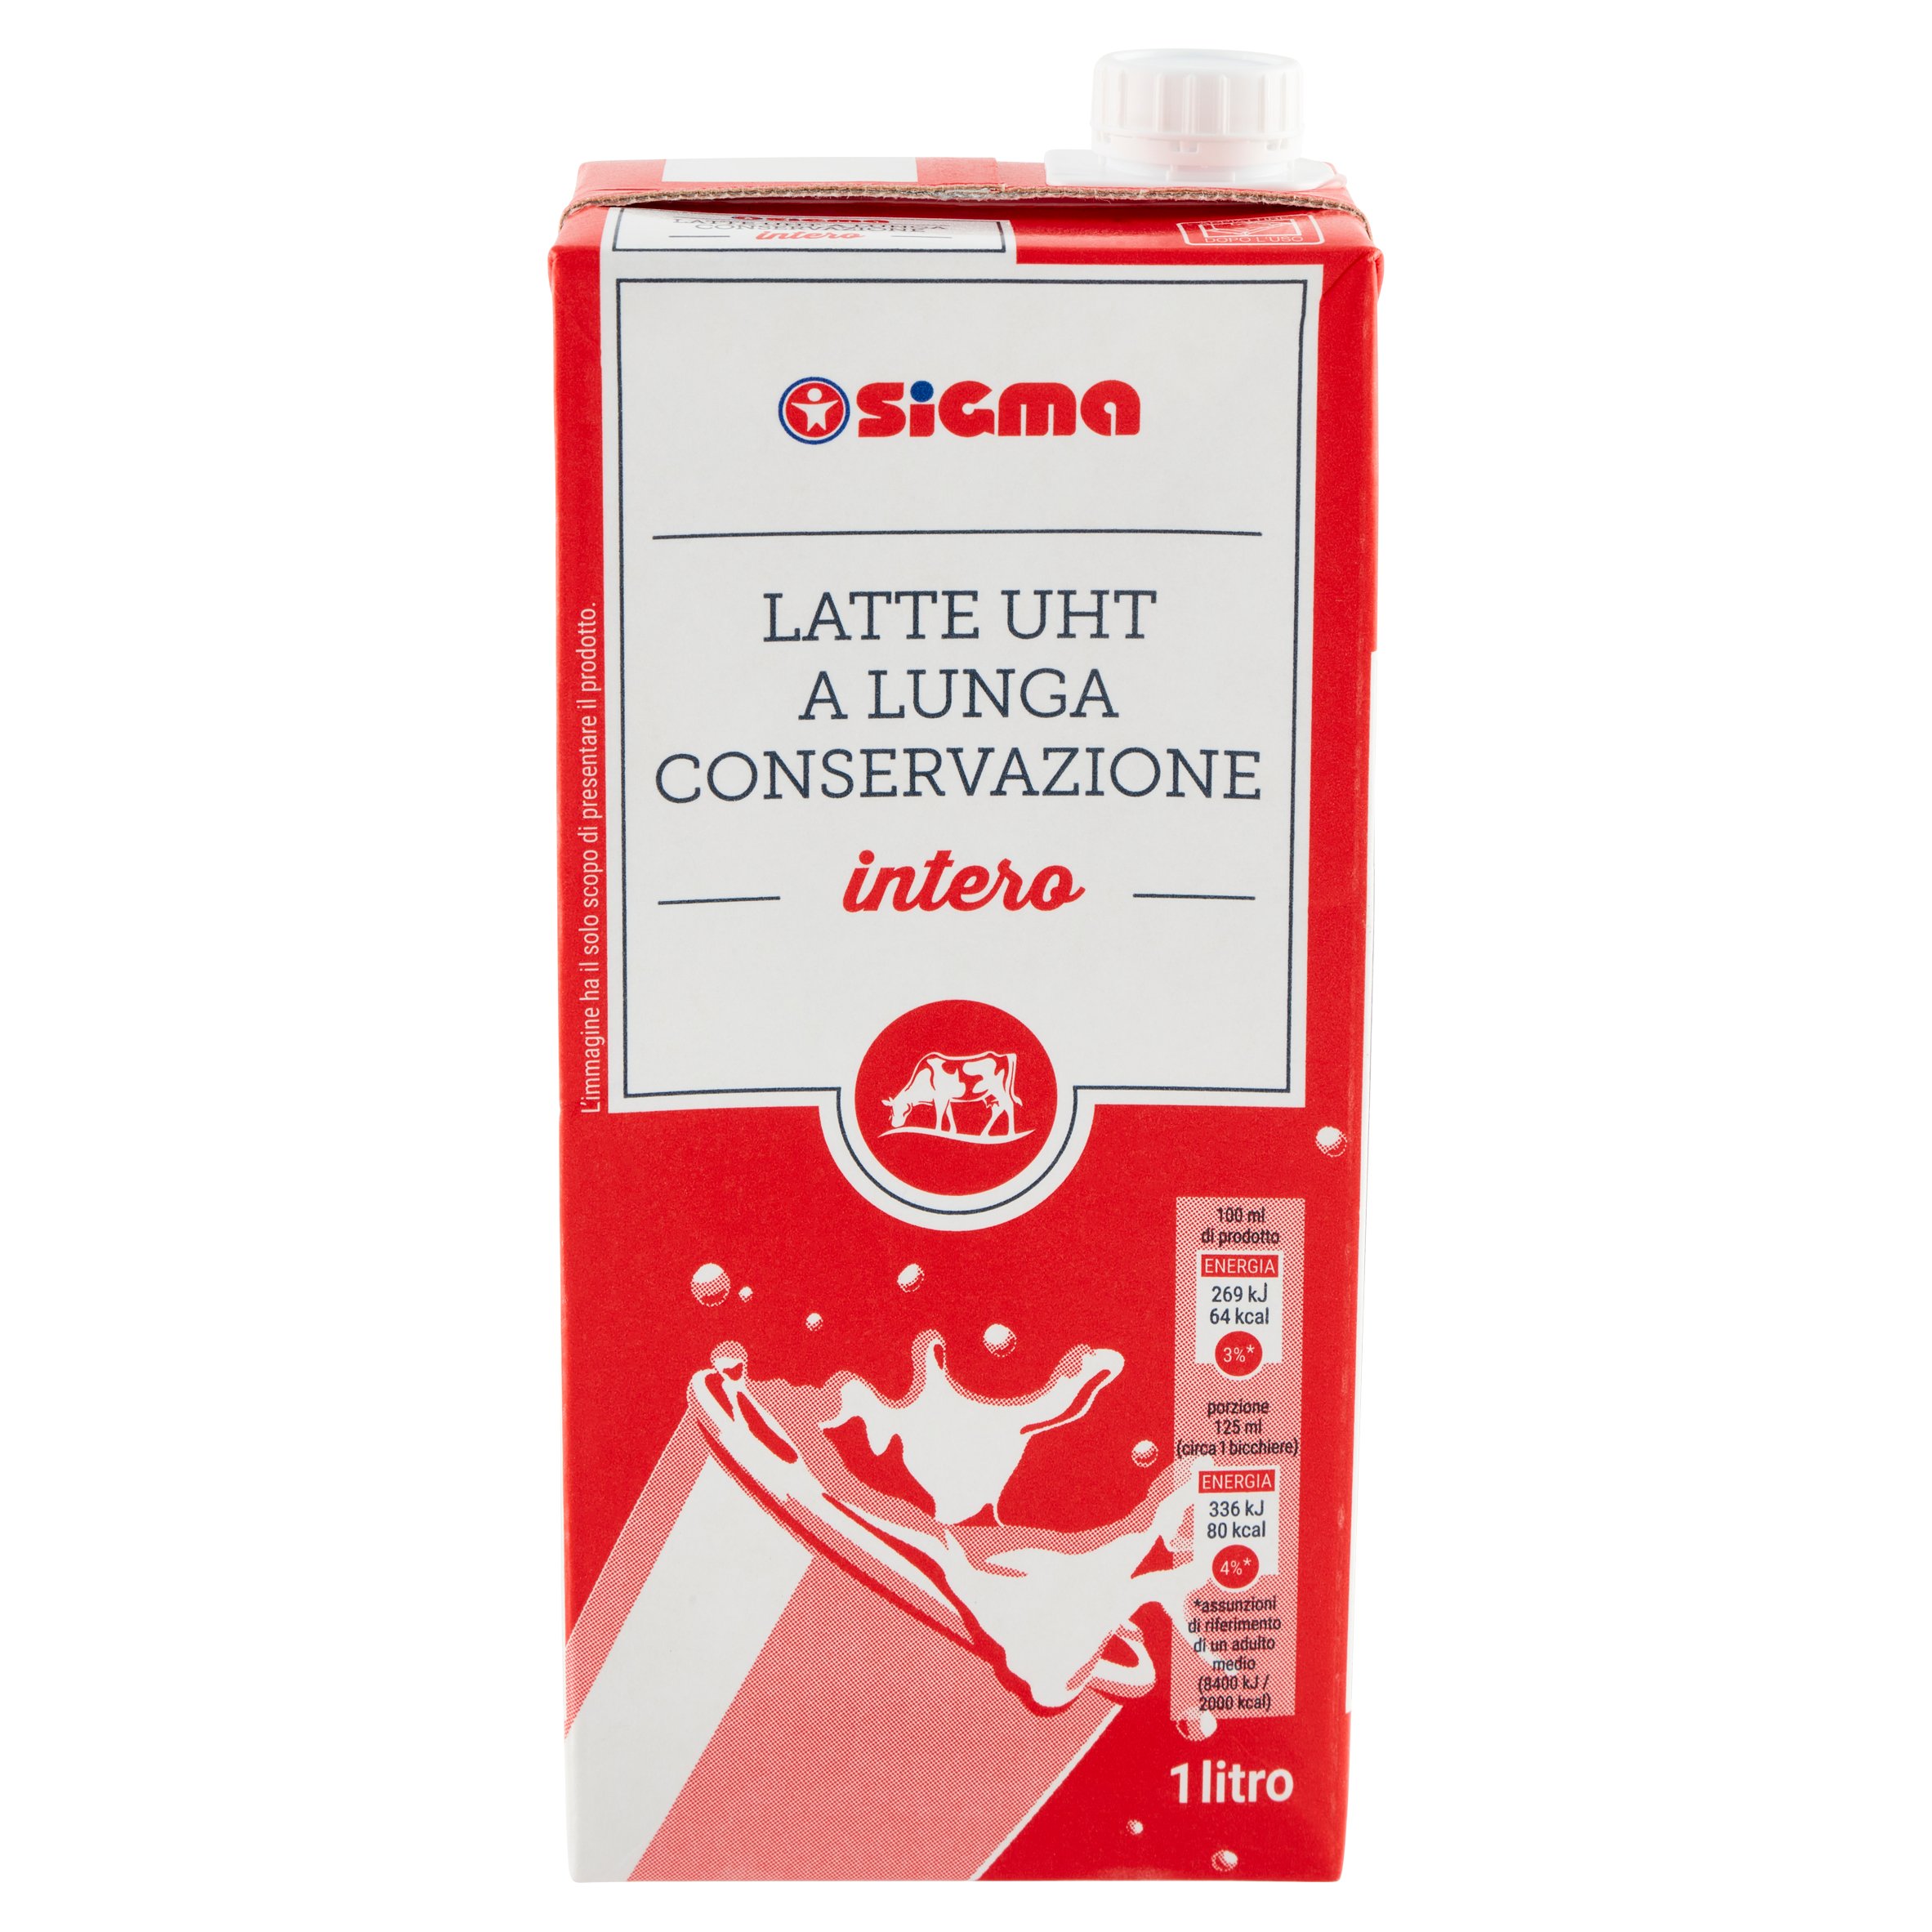 Sigma Latte UHT a Lunga Conservazione intero 1 litro - SuperSIGMA